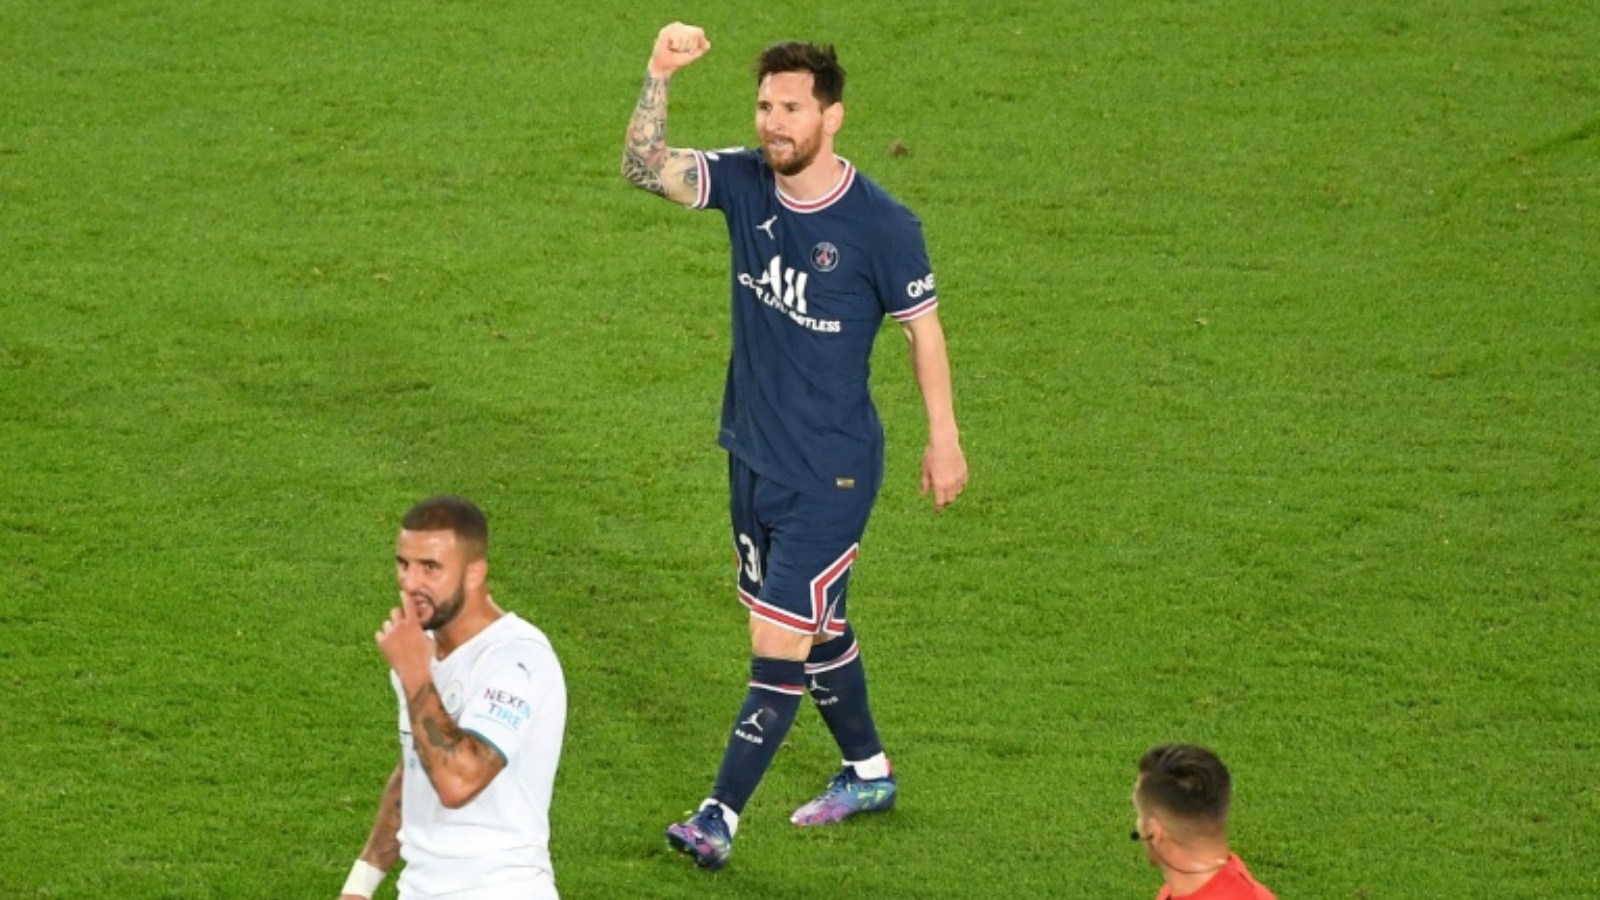 الأرجنتيني ليونيل ميسي يحتفل بهدفه الأول مع باريس سان جرمان أمام مانشستر سيتي الإنكليزي في دوري أبطال أوروبا.